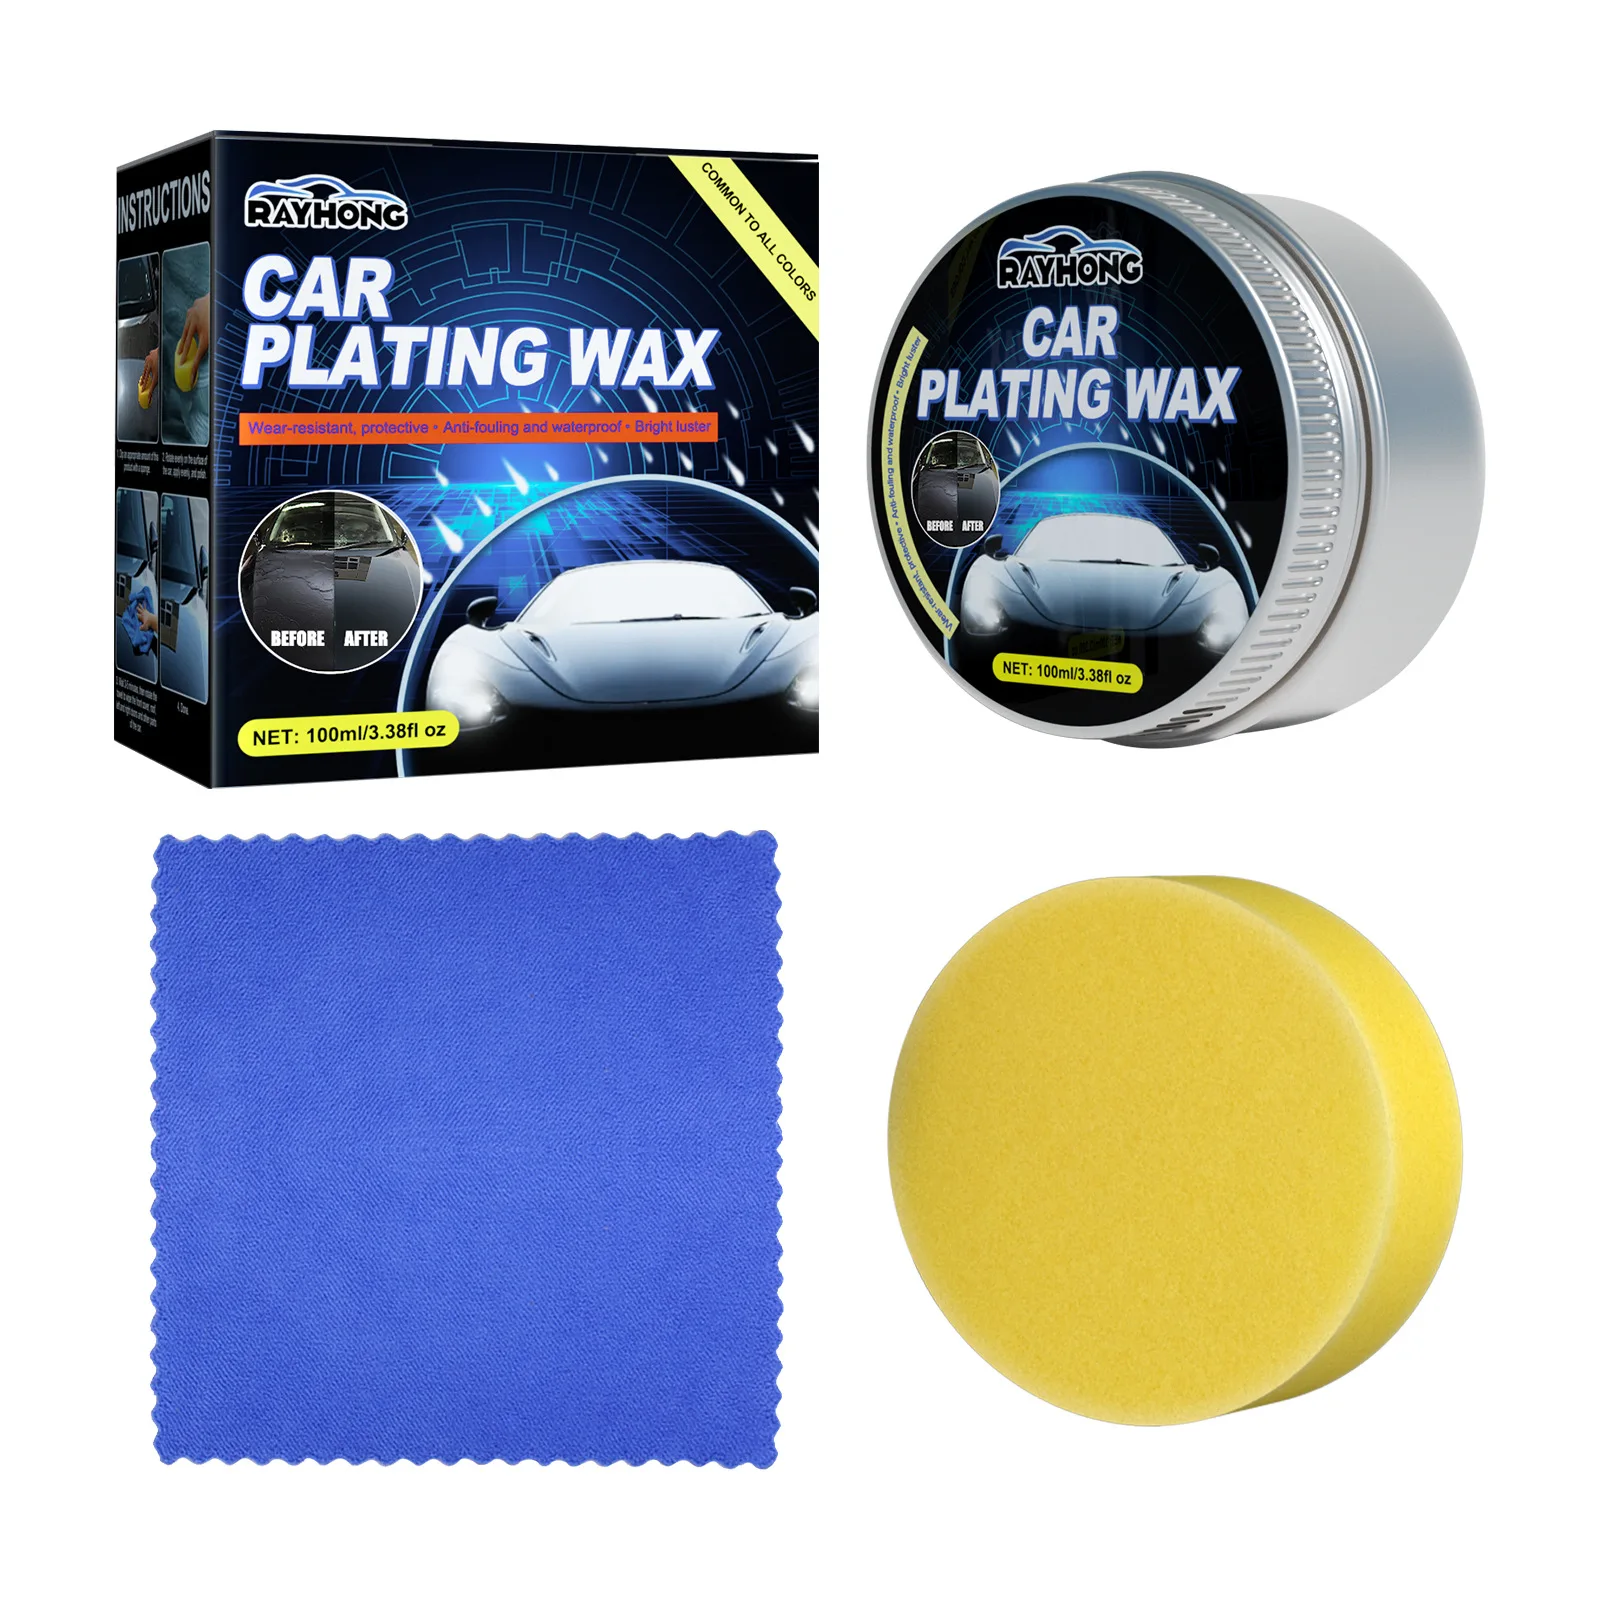 

Car Wax Crystal Plating Car Coating Wax Glossy Top Coat Car Coating Protection Crystal Plating Mirror Shine Protective Sealant